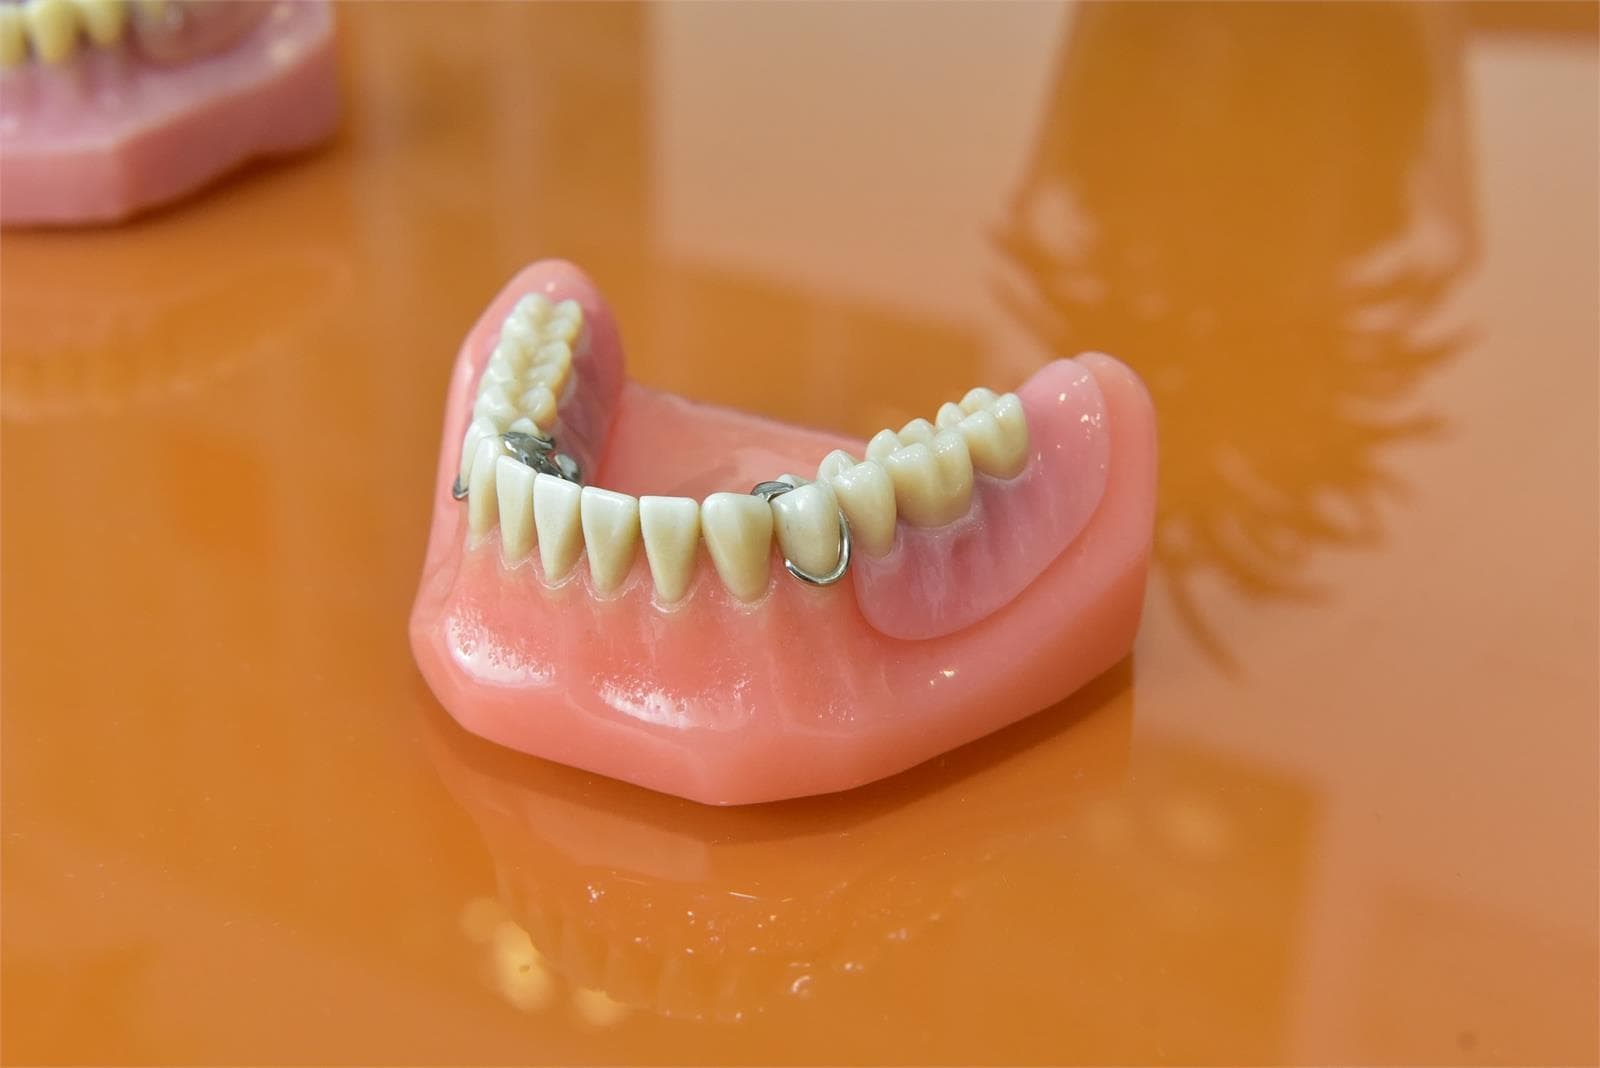 Todo lo que necesitas saber sobre las prótesis dental removible. - Imagen 1